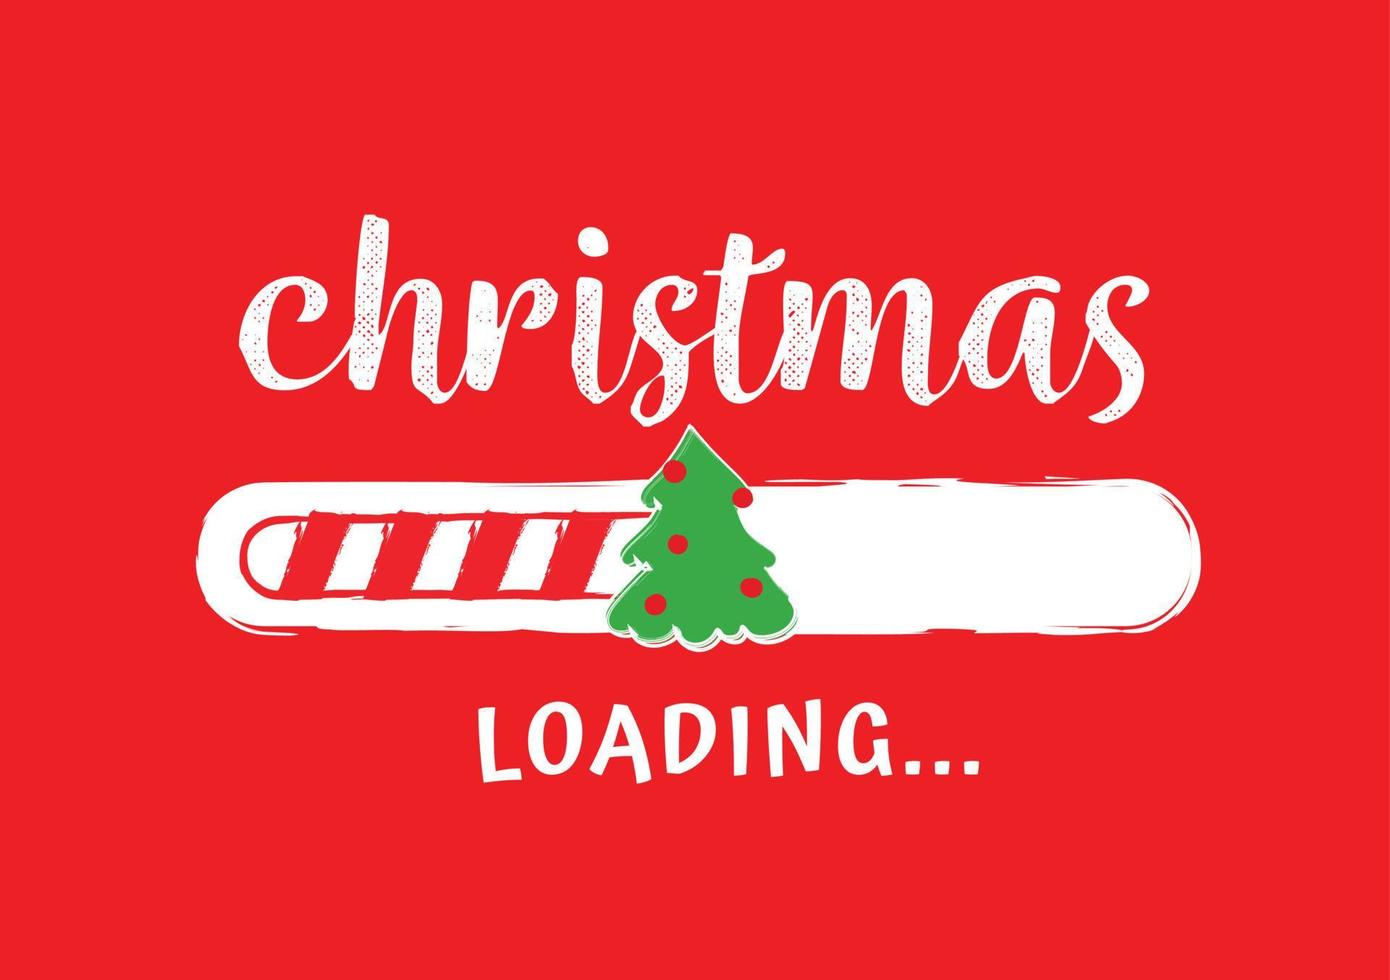 barra de progreso con inscripción - carga de navidad en estilo incompleto sobre fondo rojo. ilustración vectorial de navidad para el diseño de camisetas, afiches o tarjetas de felicitación. vector